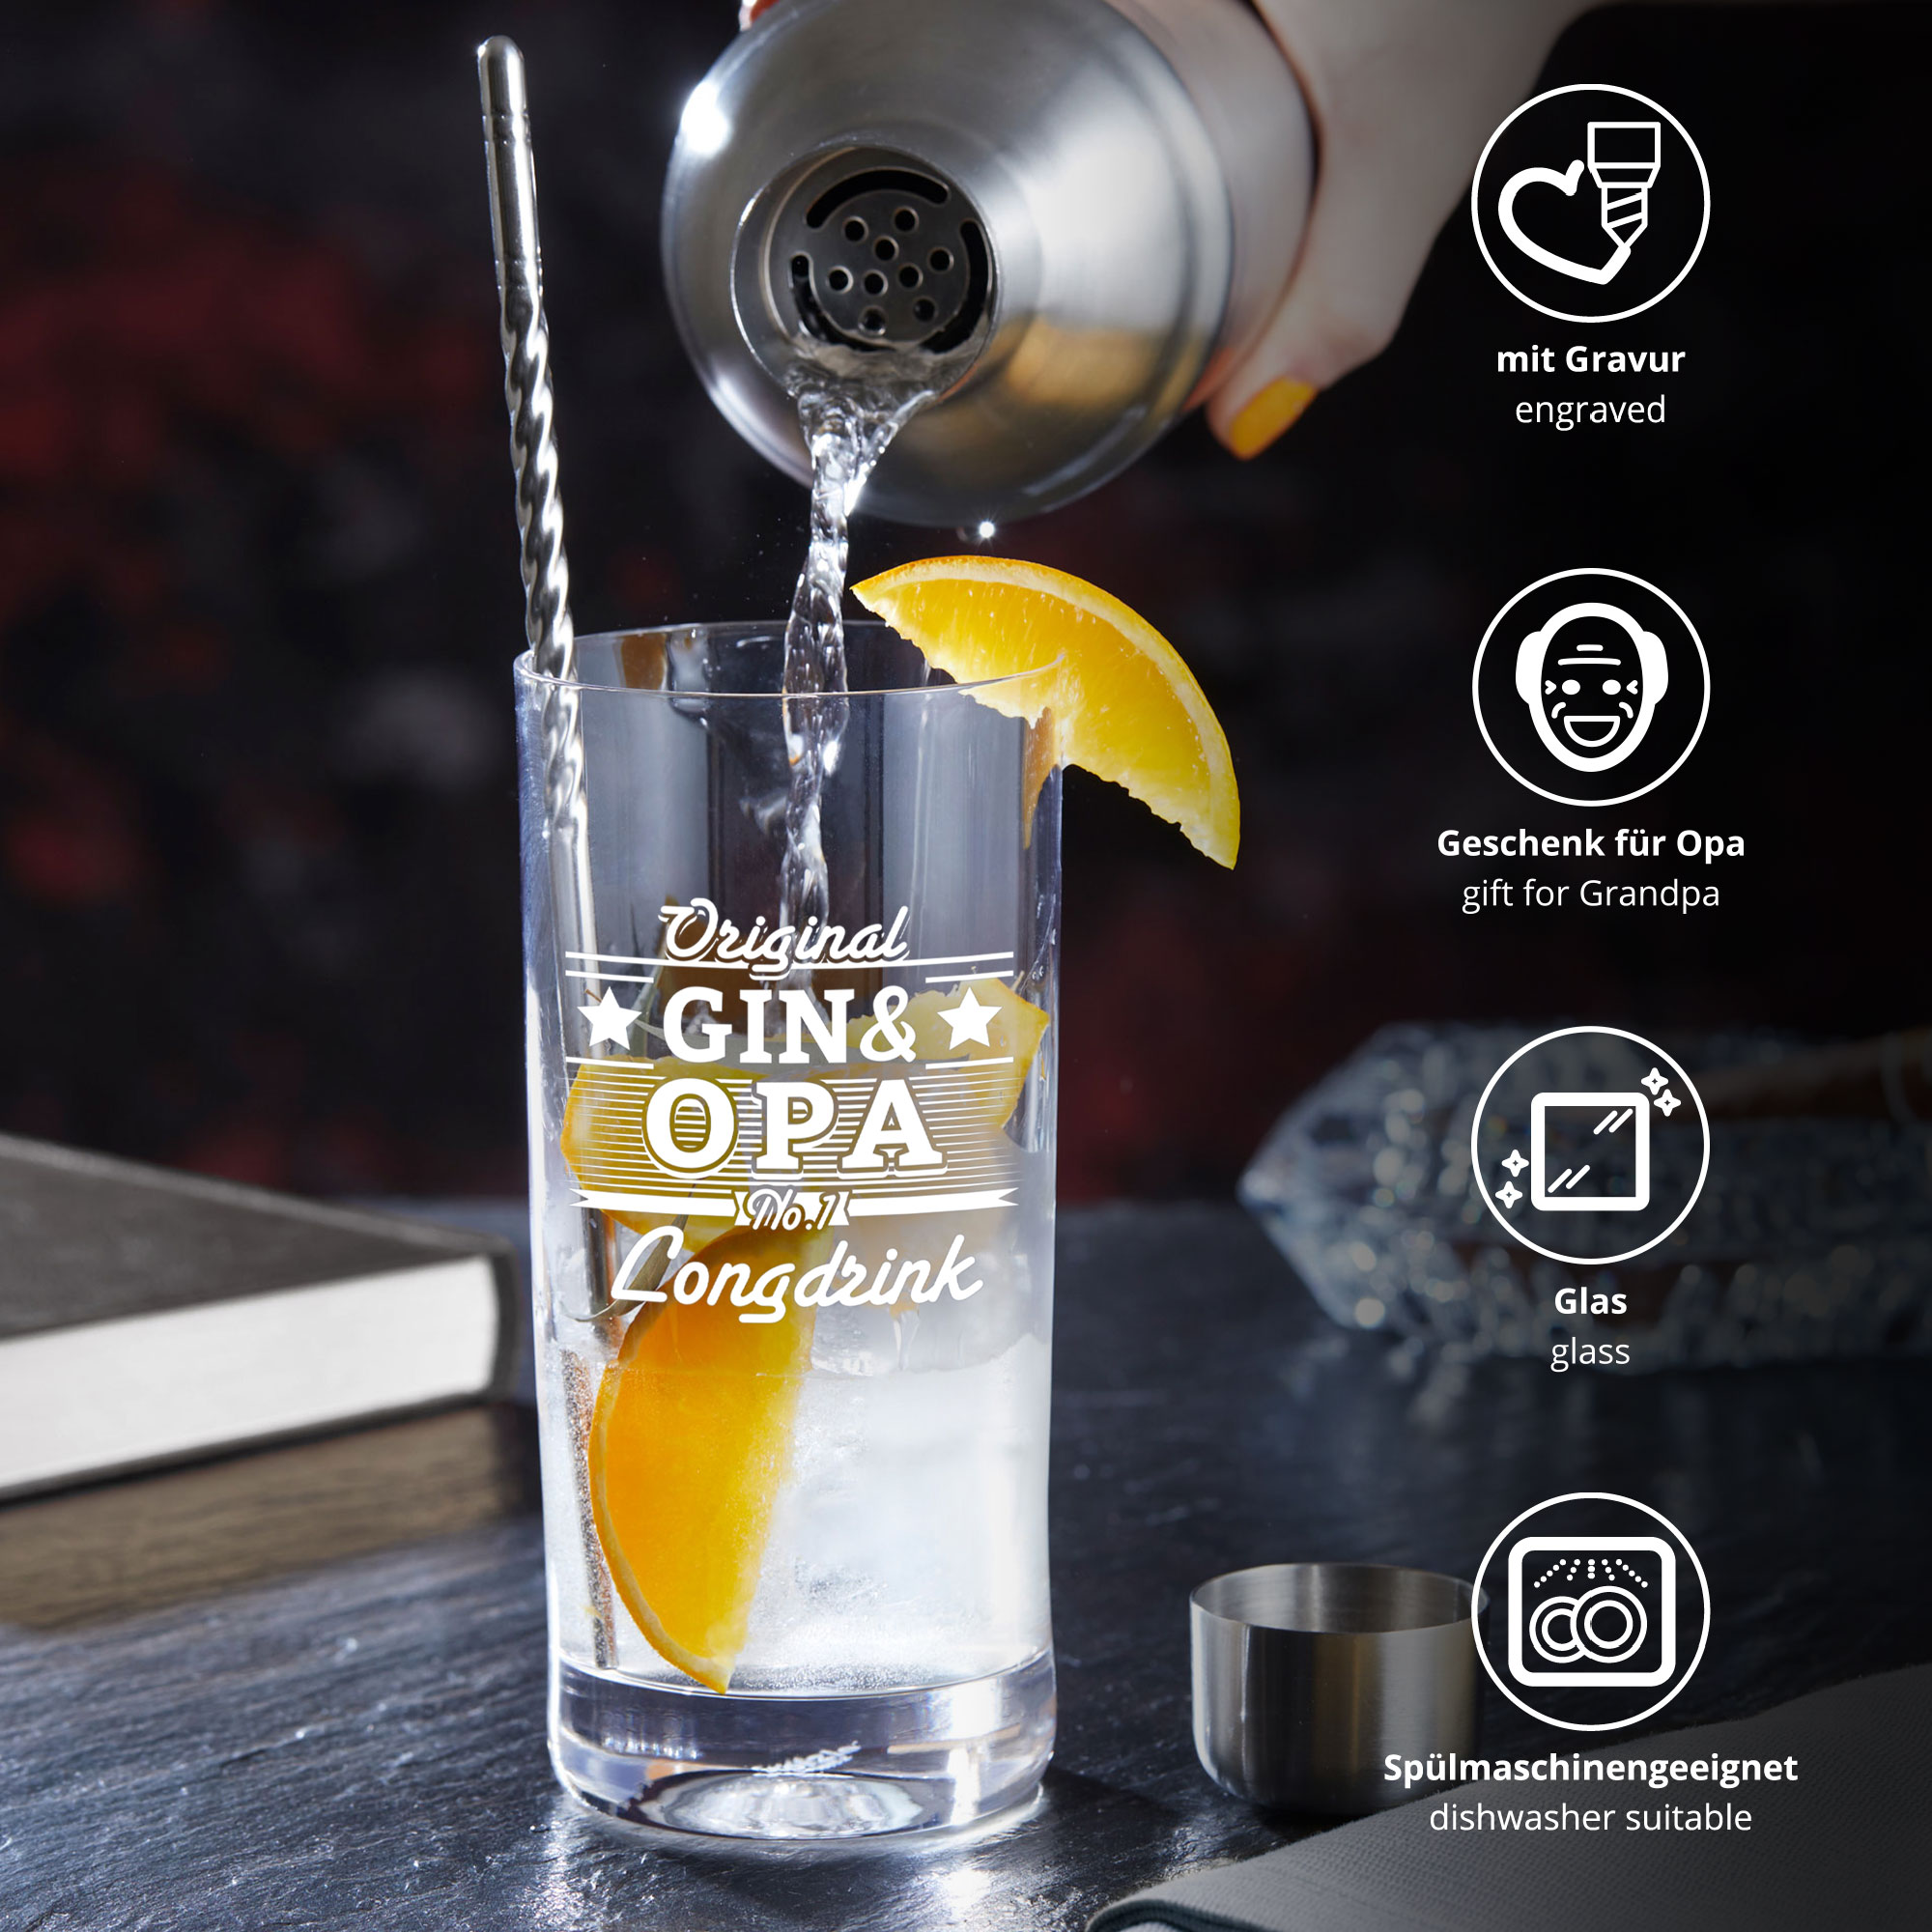 Cocktailglas mit Gravur für Opa - Gin 0006-0099-DE-0002 - 3